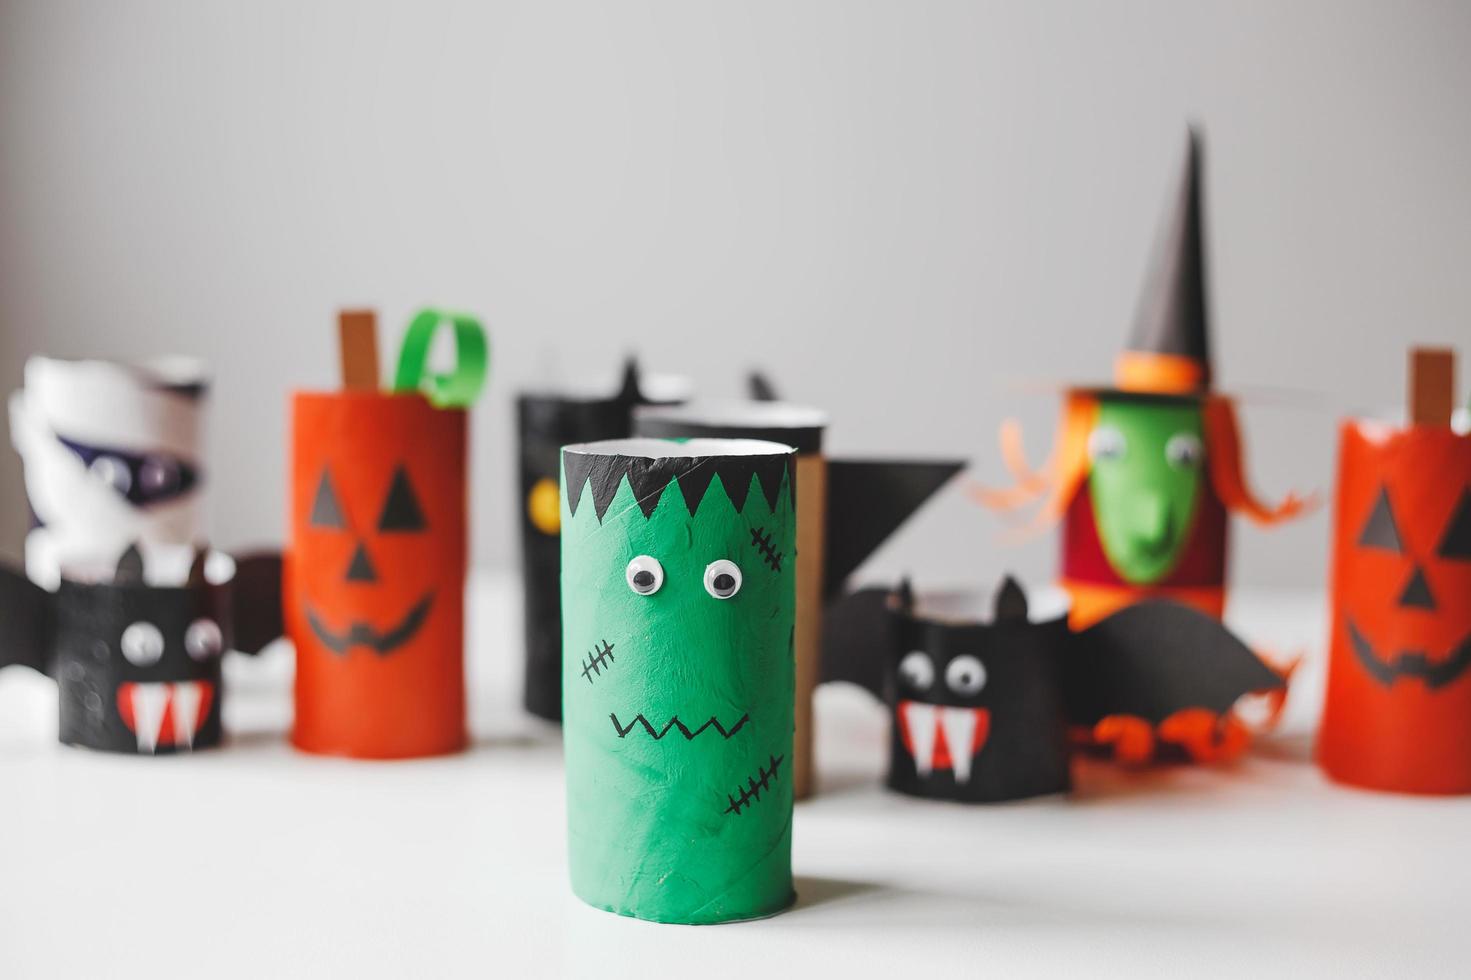 monstruos de halloween de rollos de papel higiénico. manualidades para niños foto